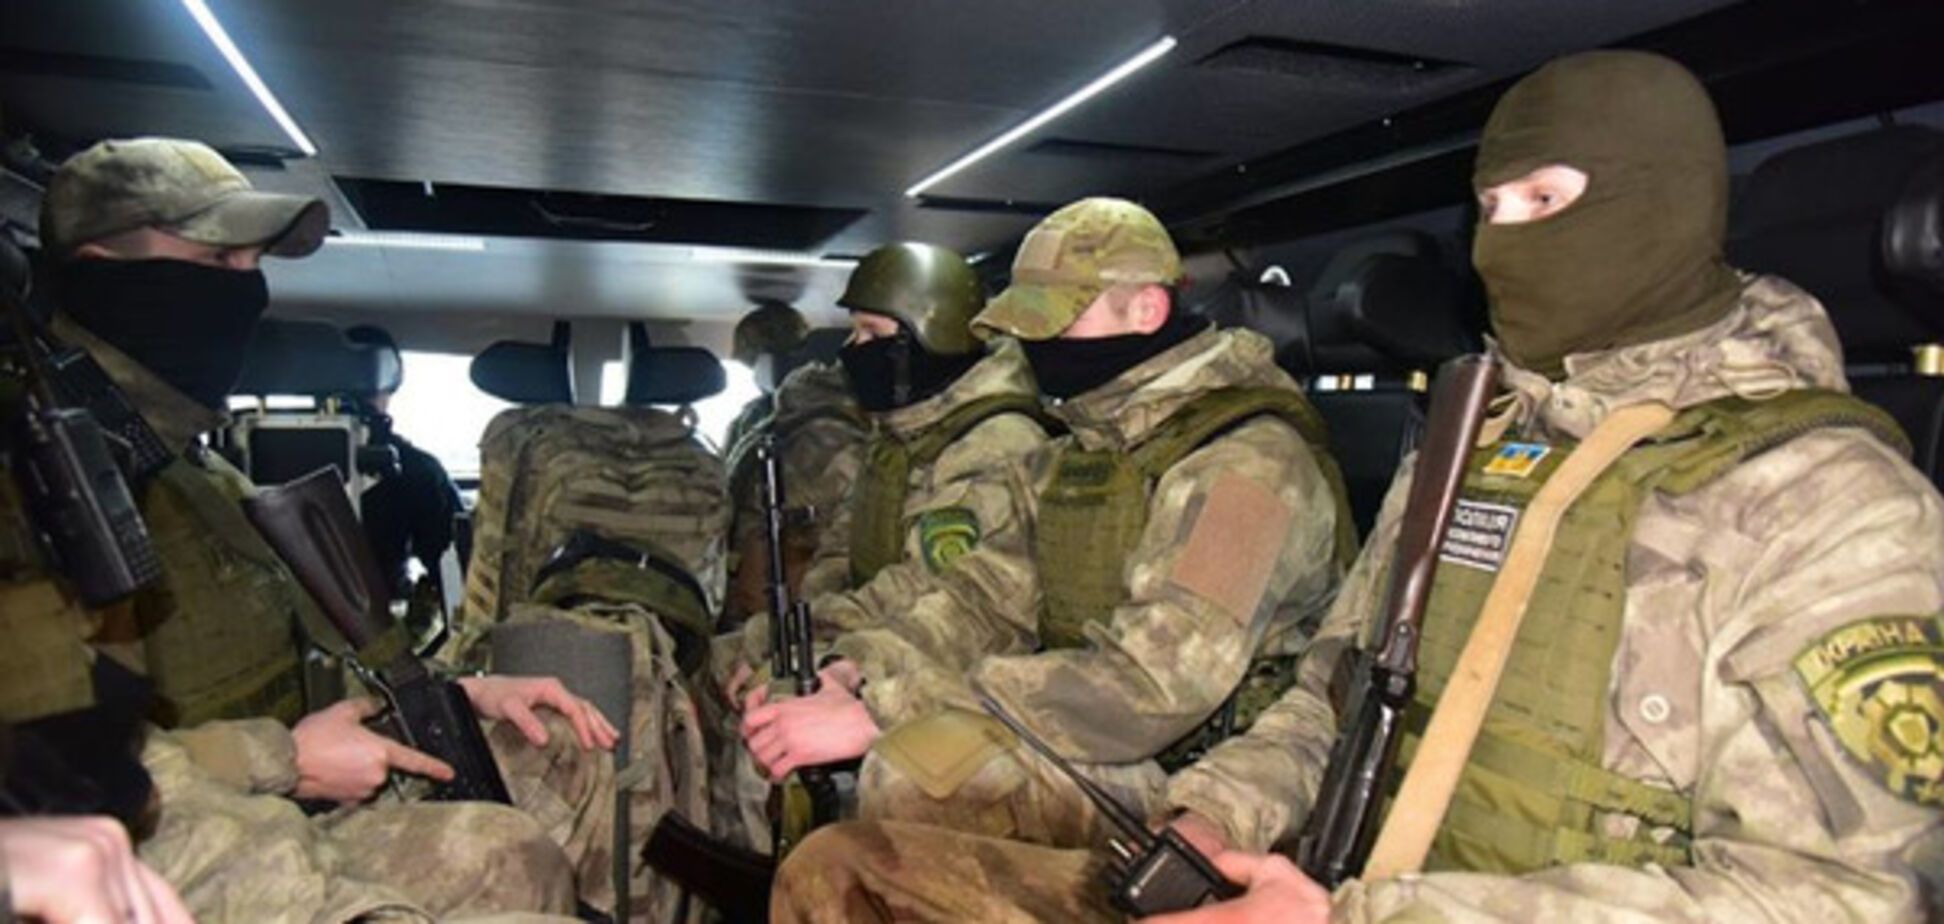 Аброськин: в оставшуюся без света Авдеевку отправили спецподразделение полиции